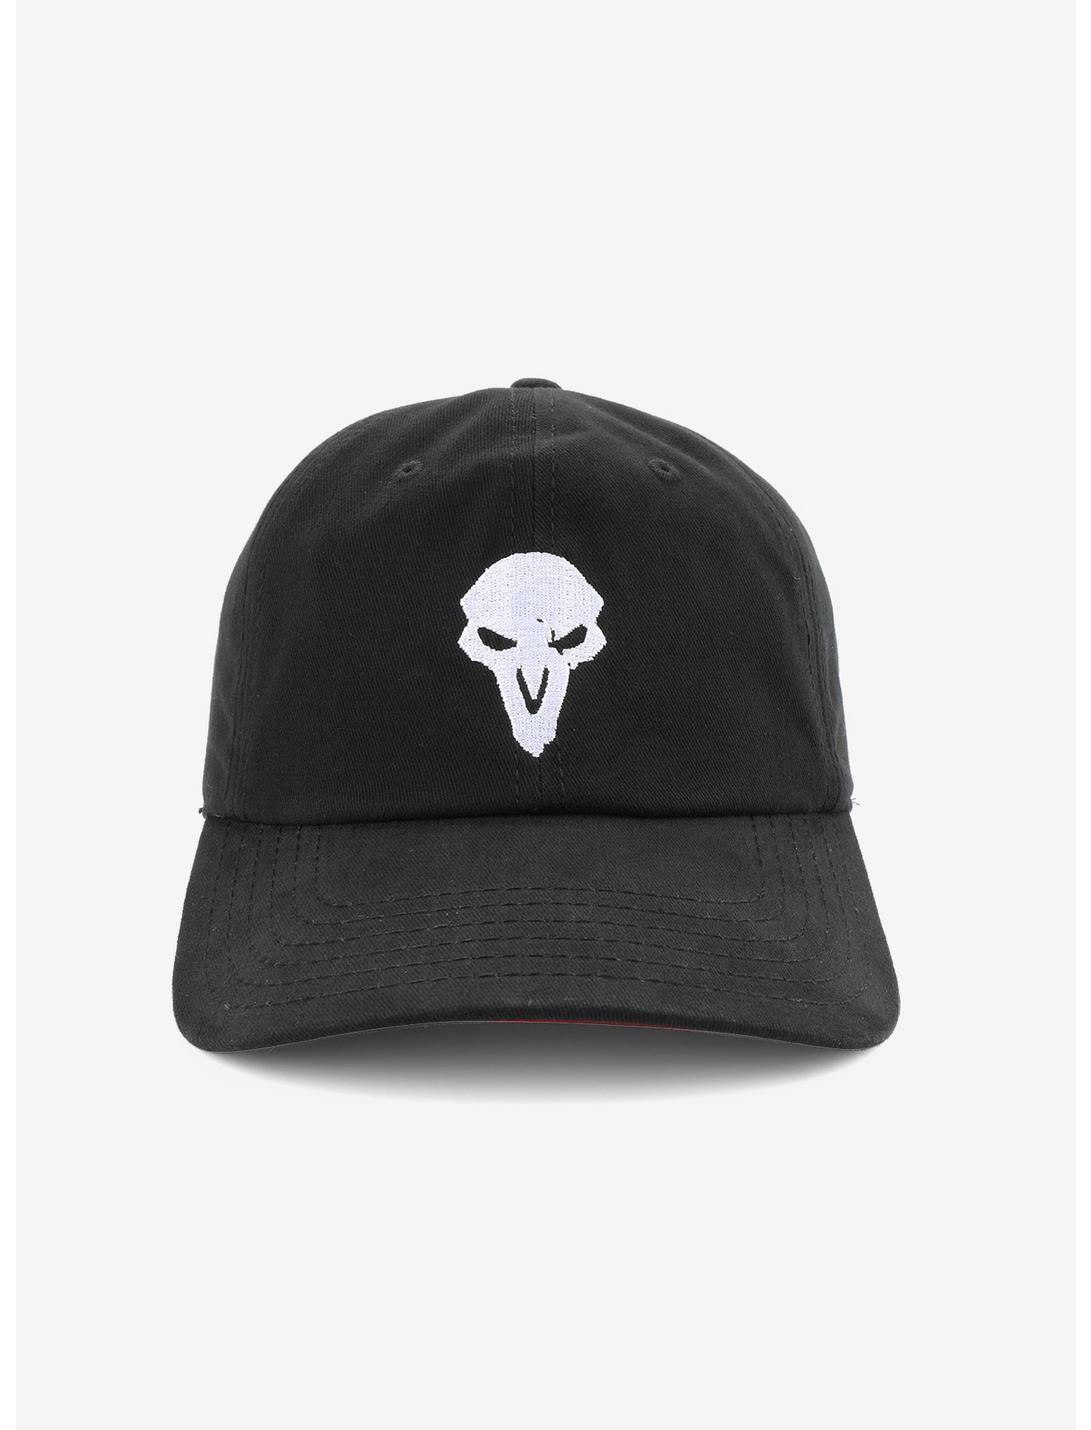 Overwatch Reaper Dad Hat, , hi-res